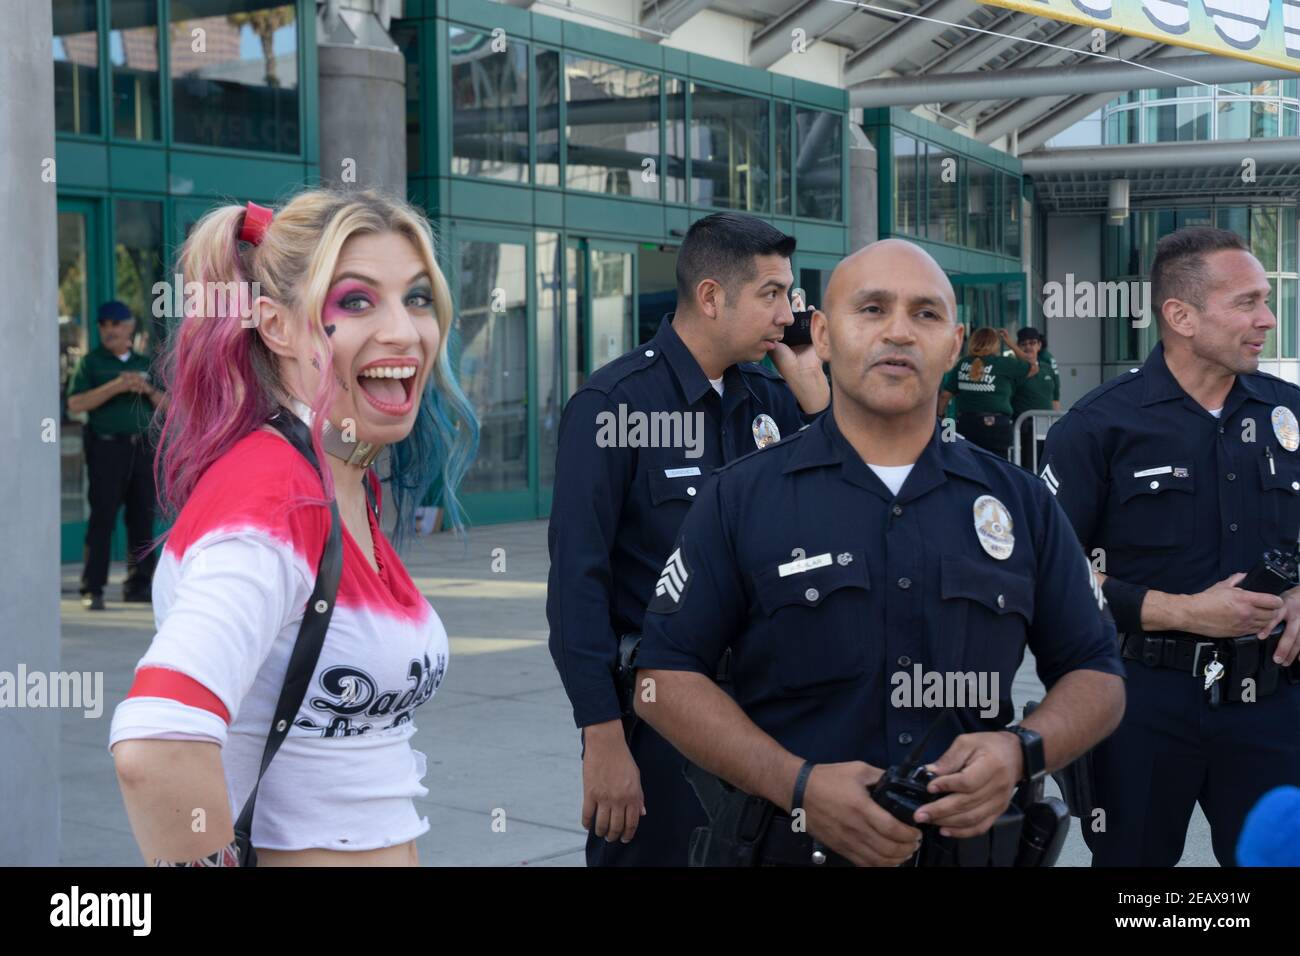 Un cosprayer vestito come Harley Quinn dall'universo DC si presenta sorridente ampiamente accanto a tre poliziotti LAPD in servizio. Foto Stock